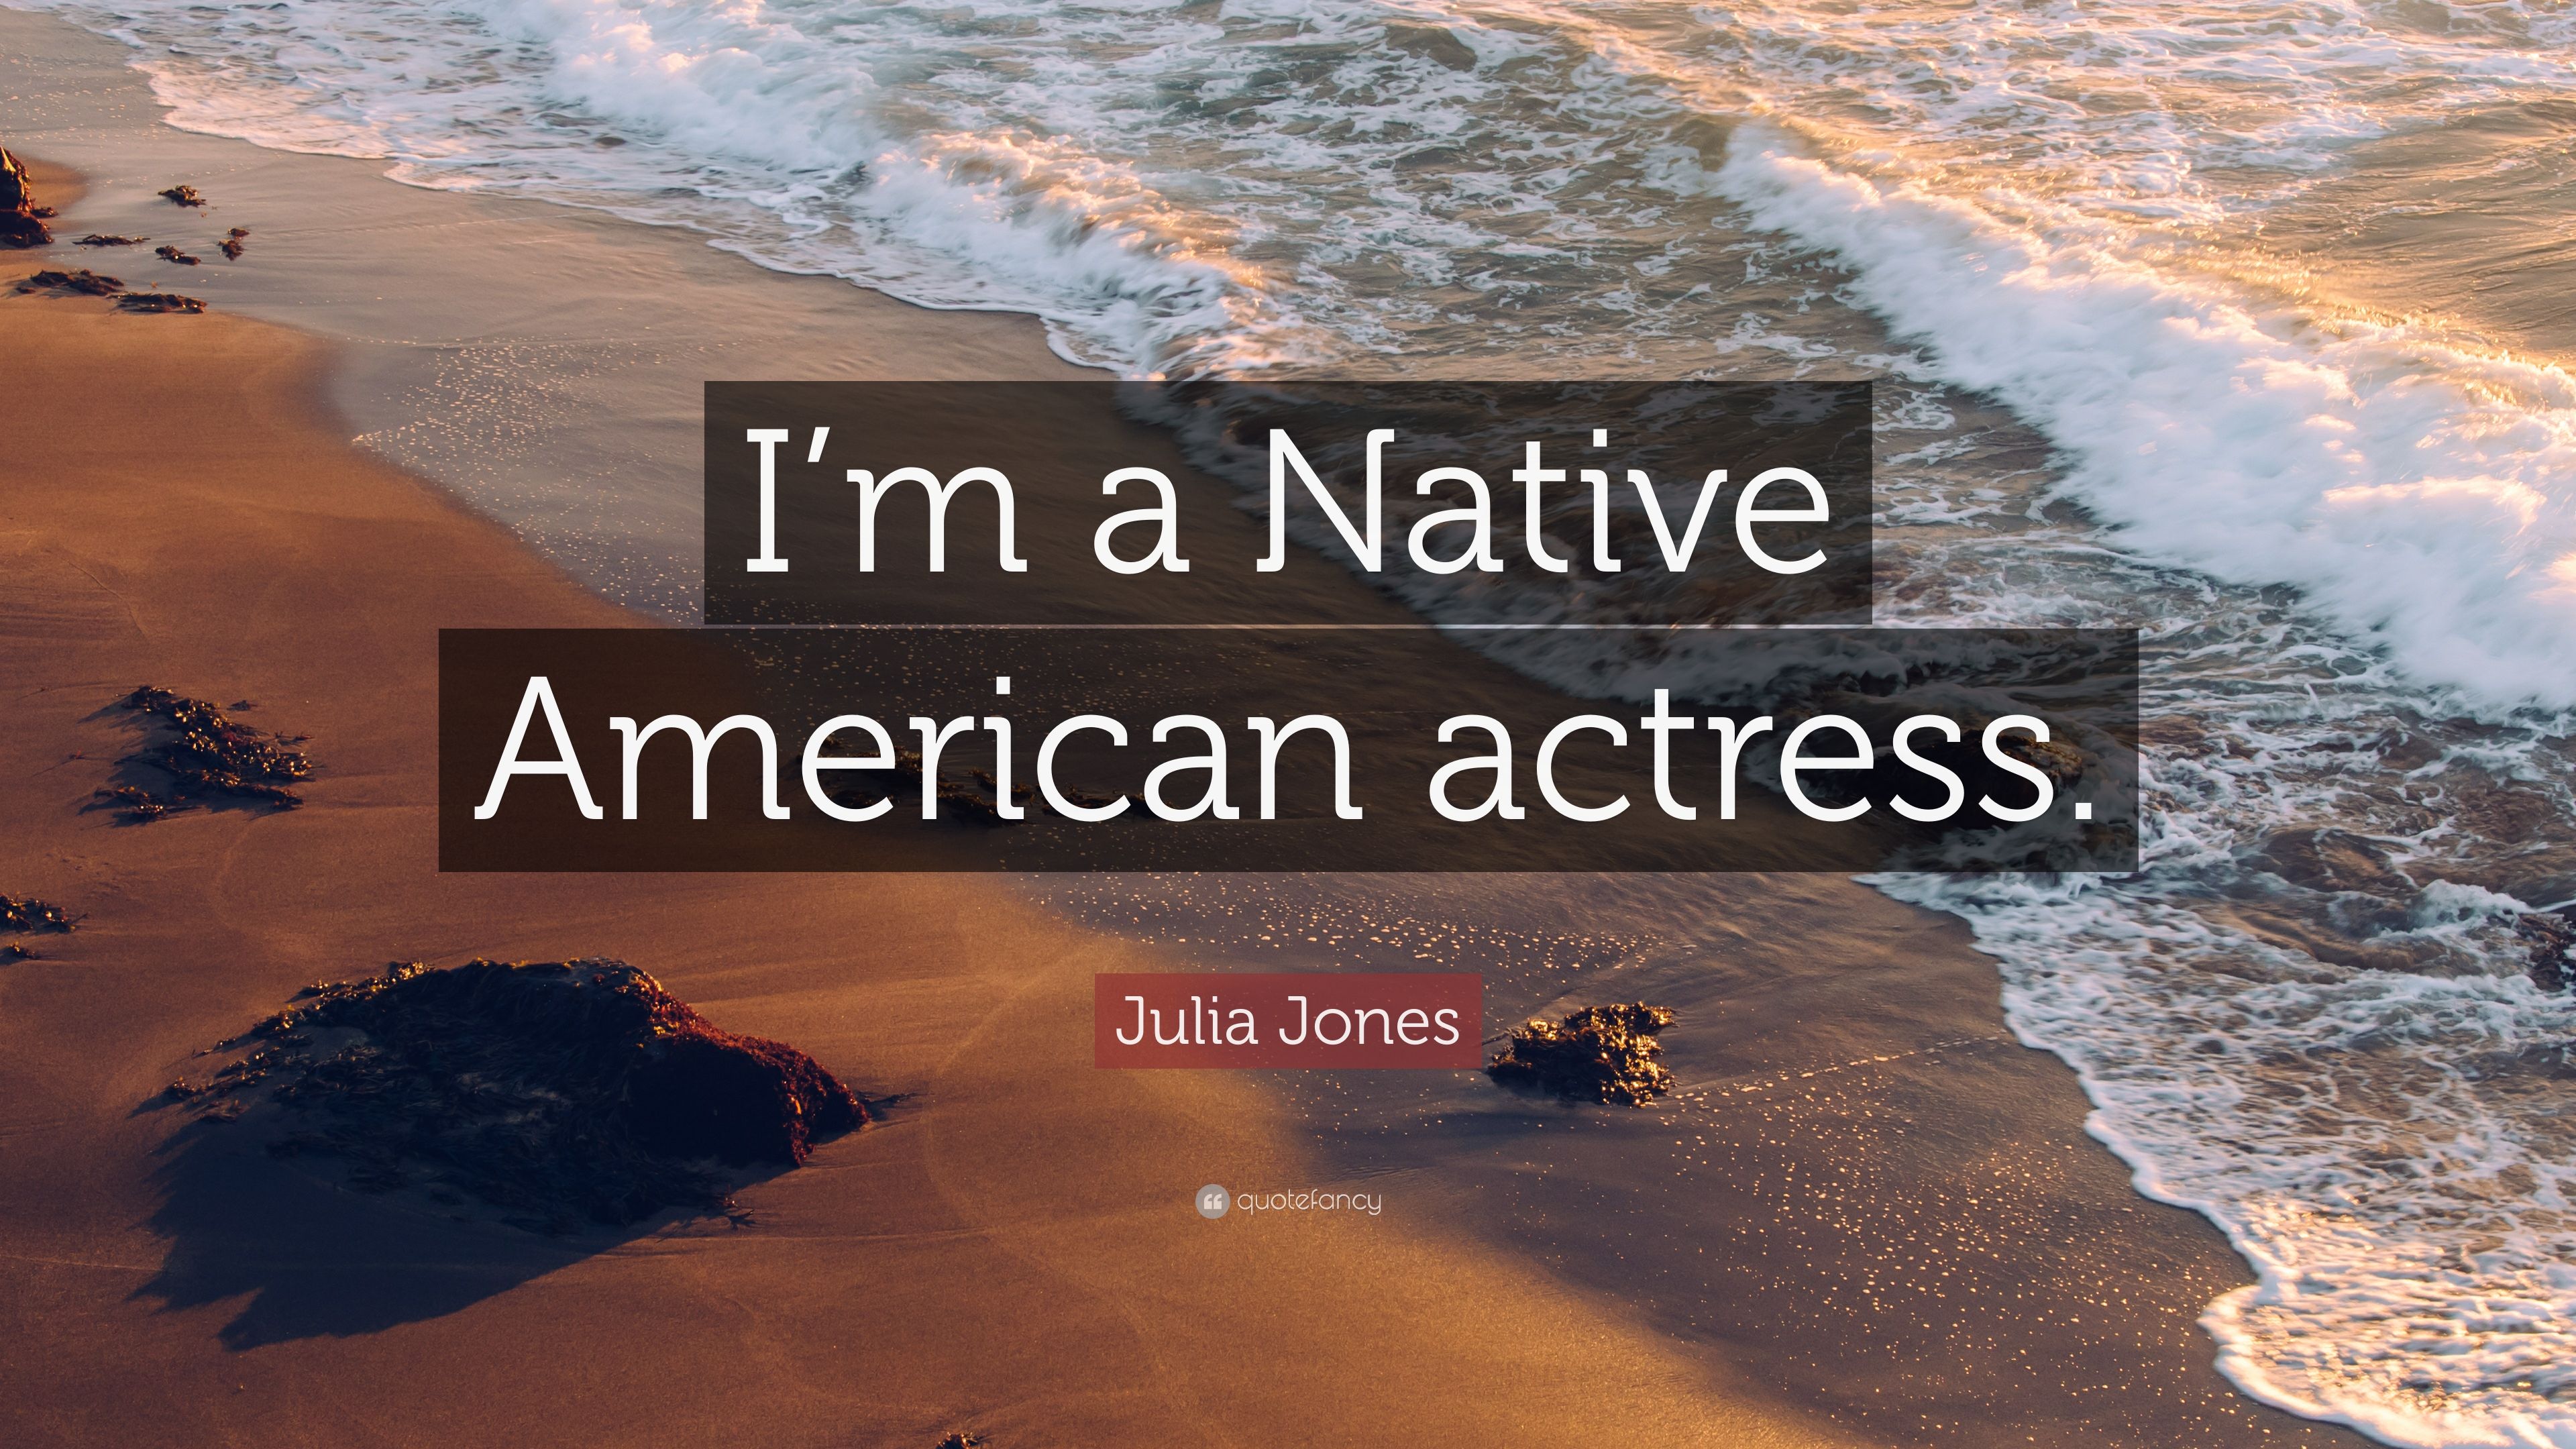 Julia Jones Quote: “I'm a Native American actress.” 7